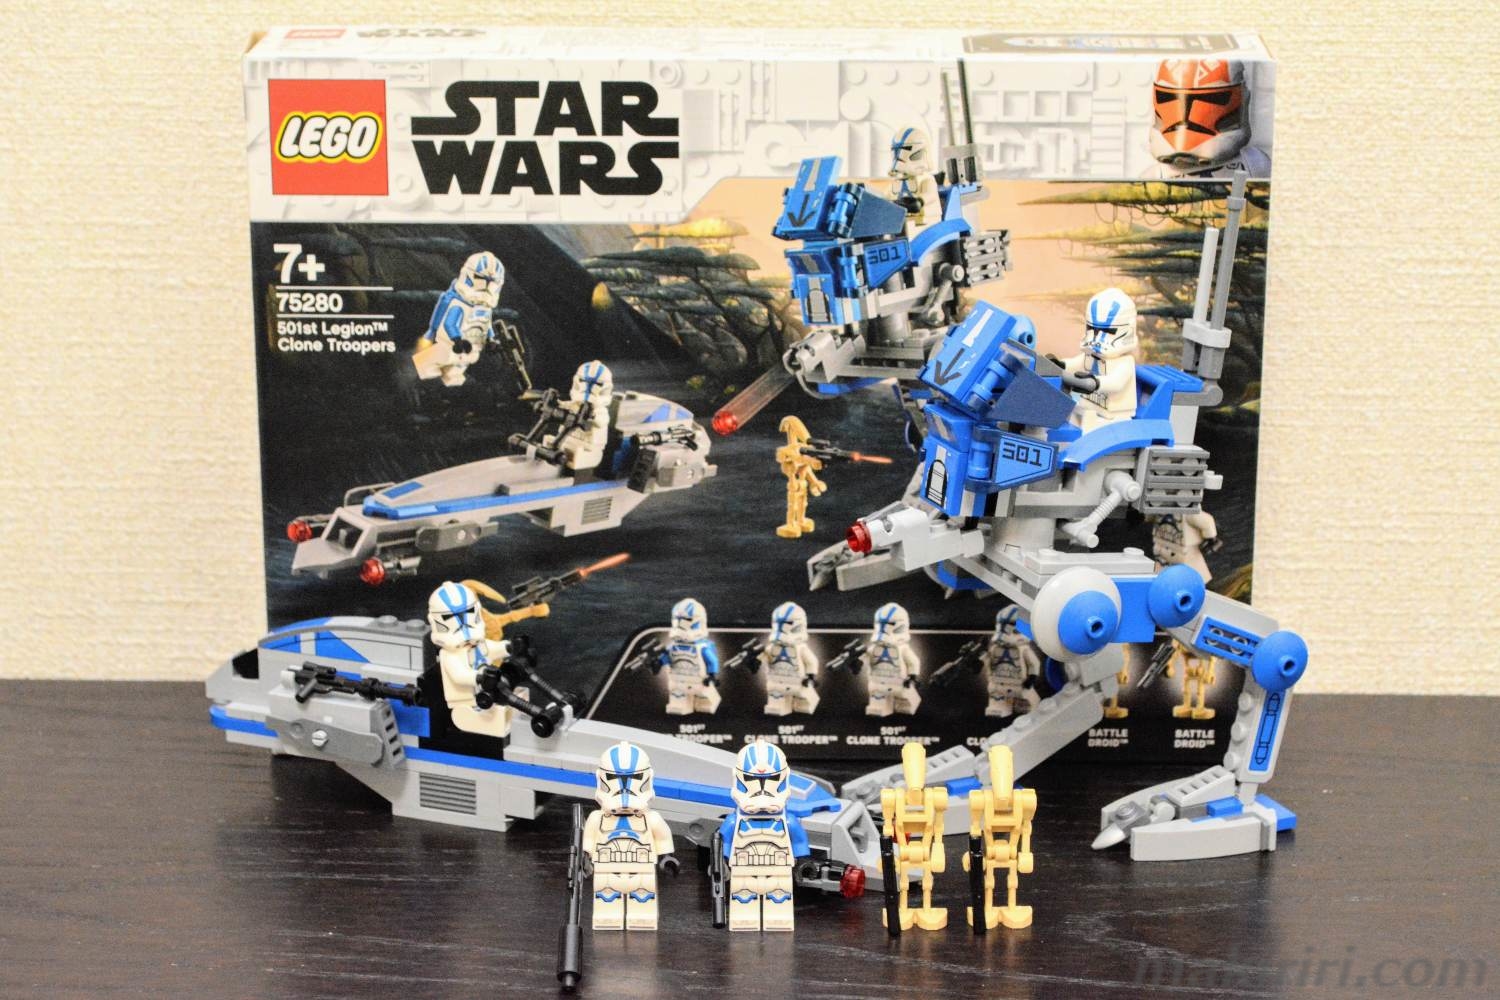 LEGO】スター・ウォーズ 75280 クローン・トルーパー501部隊(2020年 